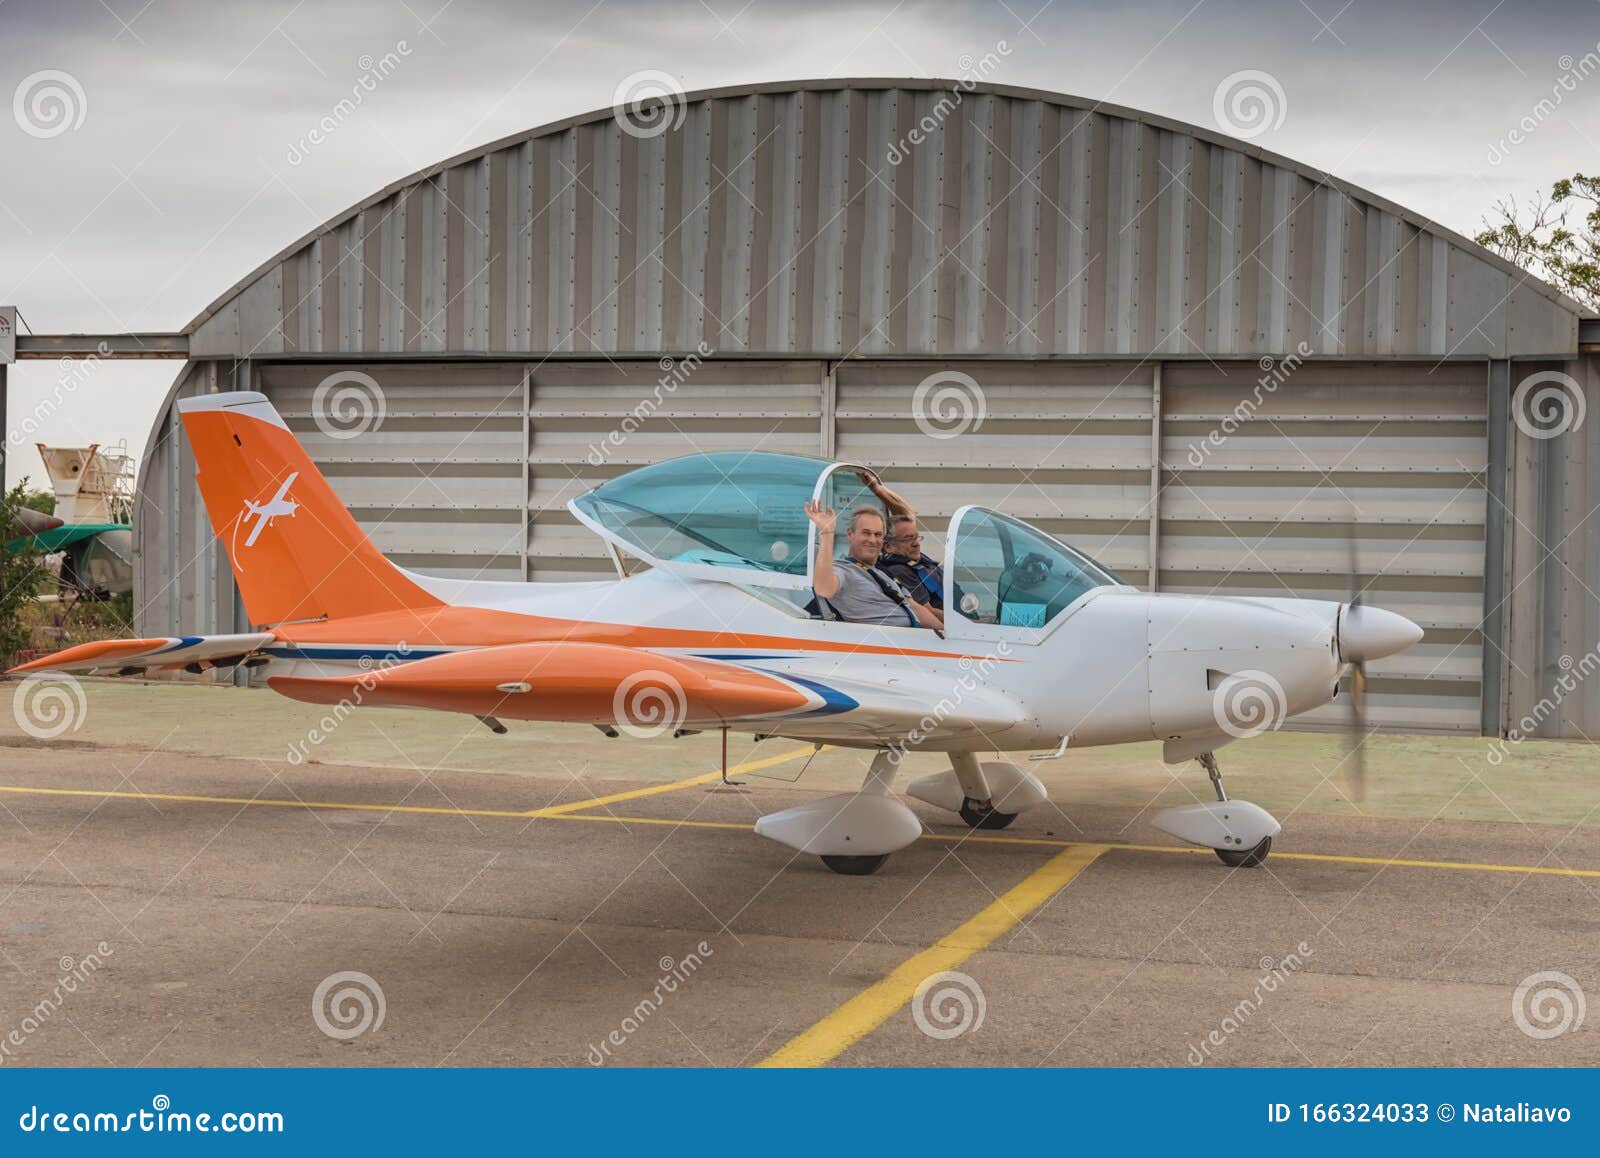 Zwei Manner Pilot Und Ausbilder Fliegen Mit Dem Flugzeug Pilotausbildung In Israel Redaktionelles Stockfoto Bild Von Fliegen Zwei